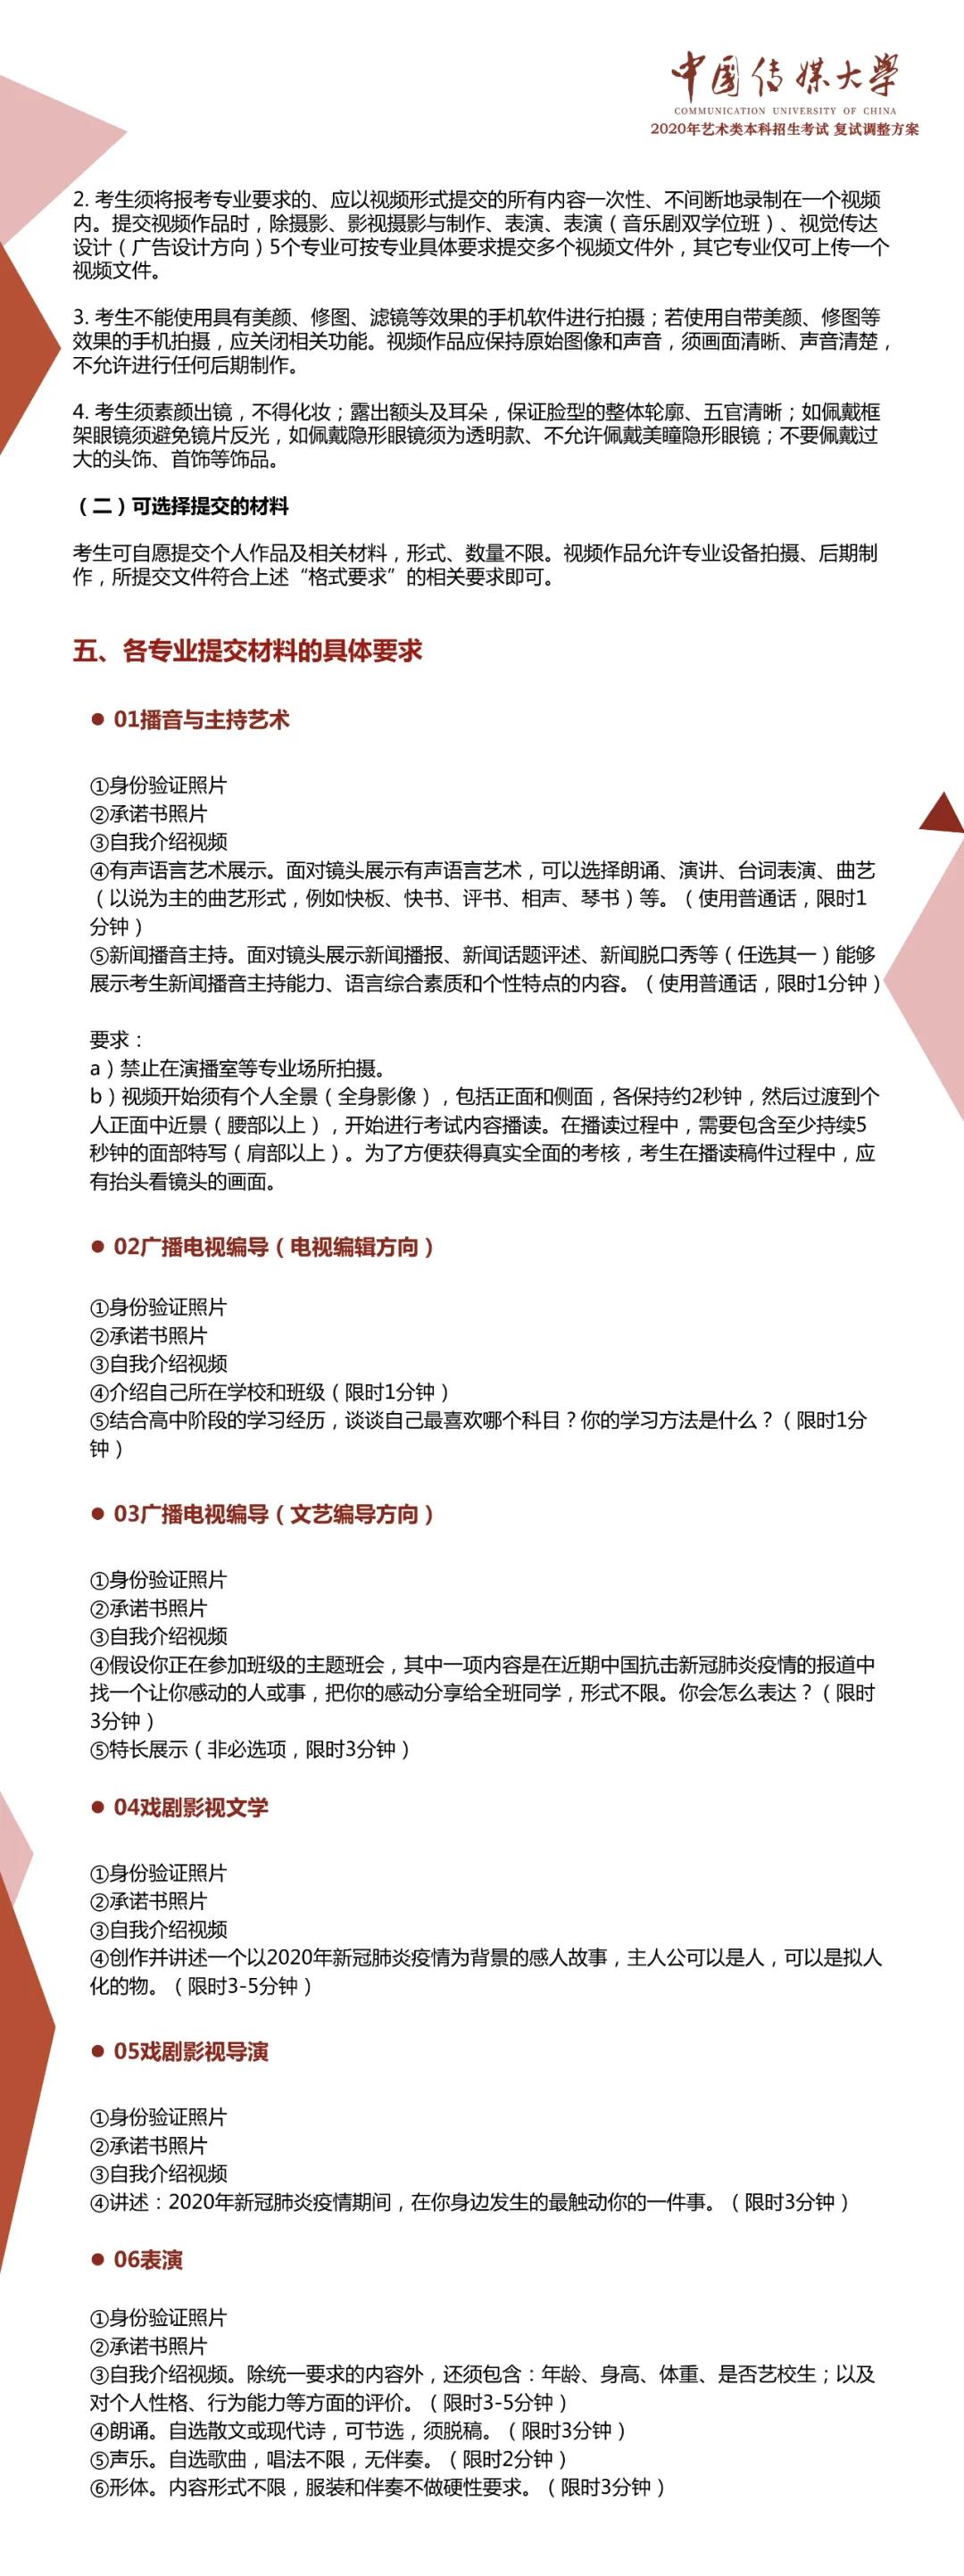 中国传媒大学2020年艺术类考试较新公告，复试在高考后两周